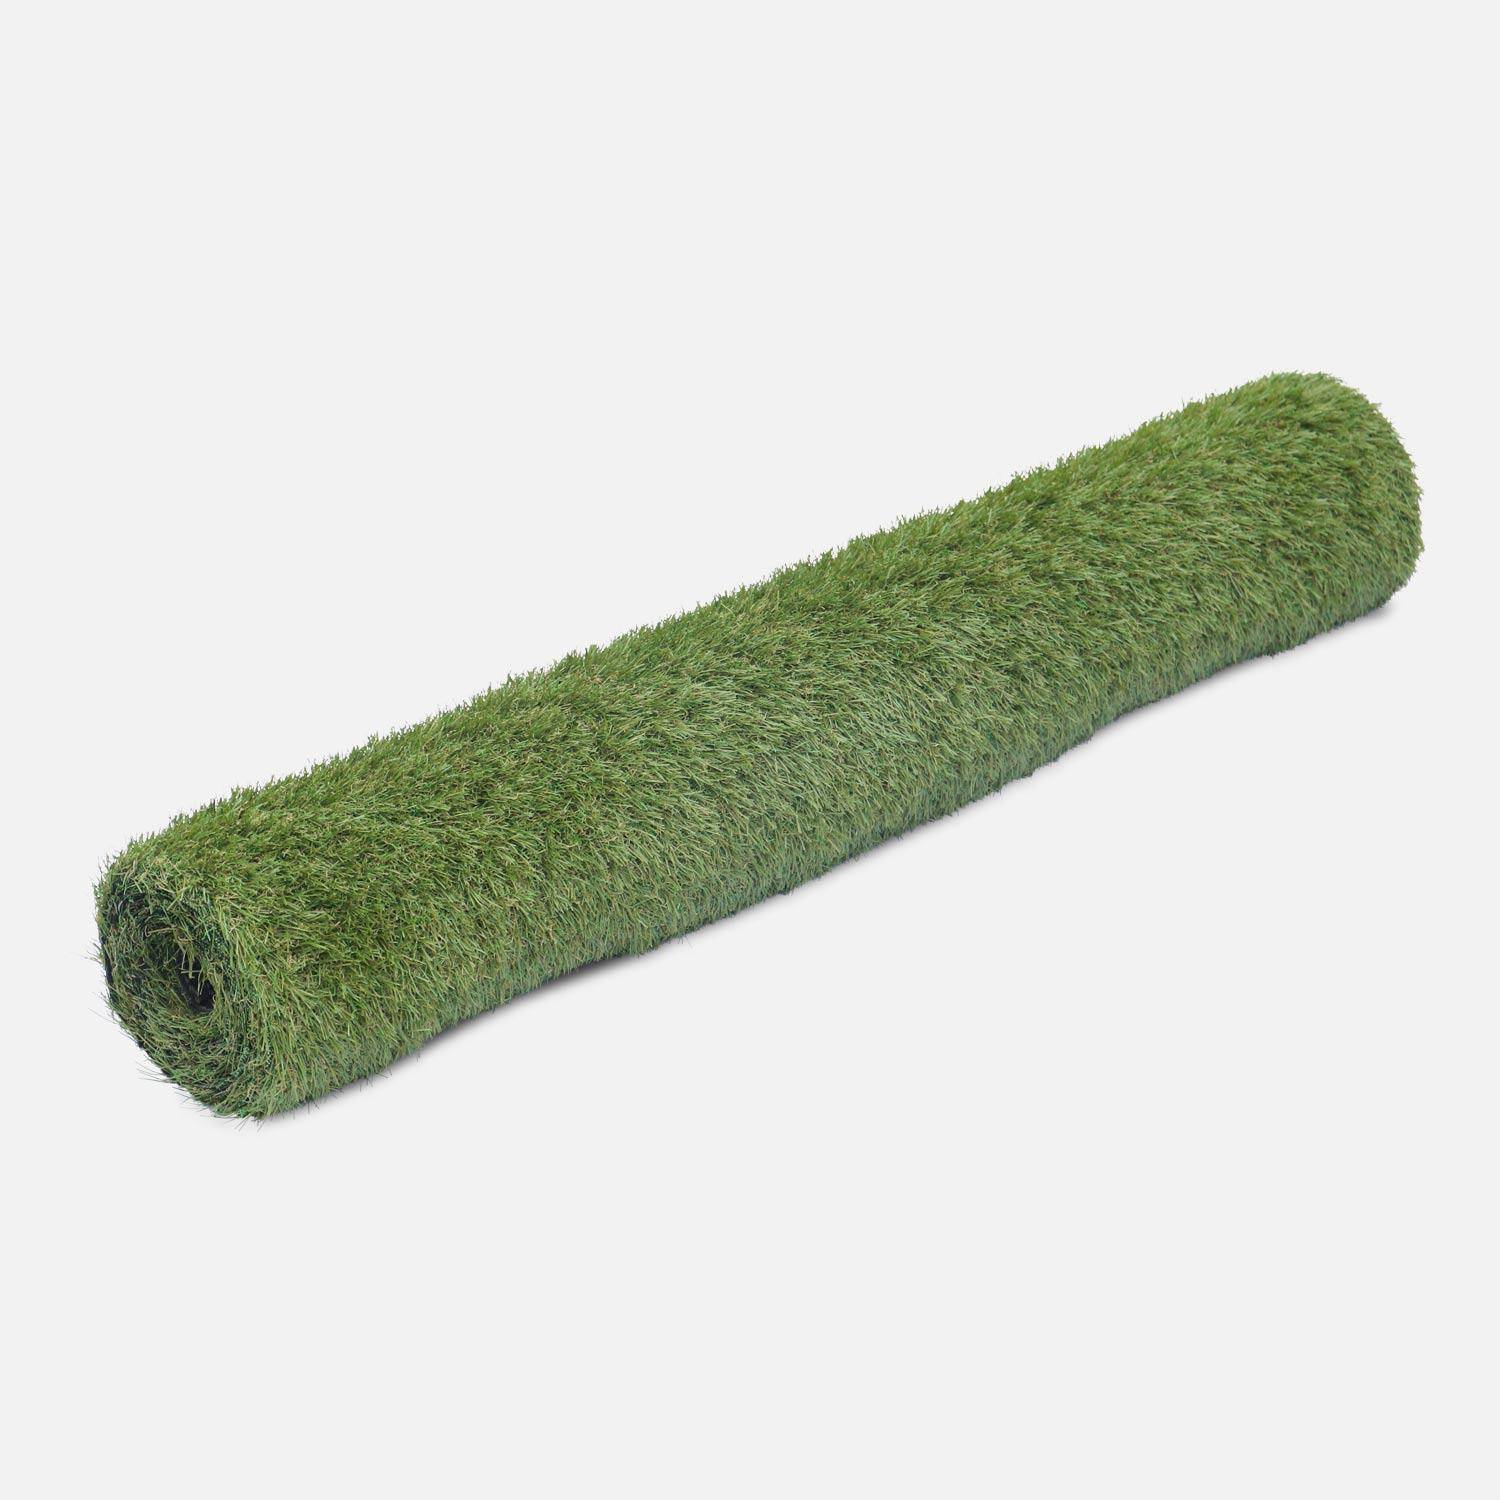 Synthetisch gras 2x5m - Carry - smaragdgroen, kaki groen en beige strengen, 28mm dik,sweeek,Photo2